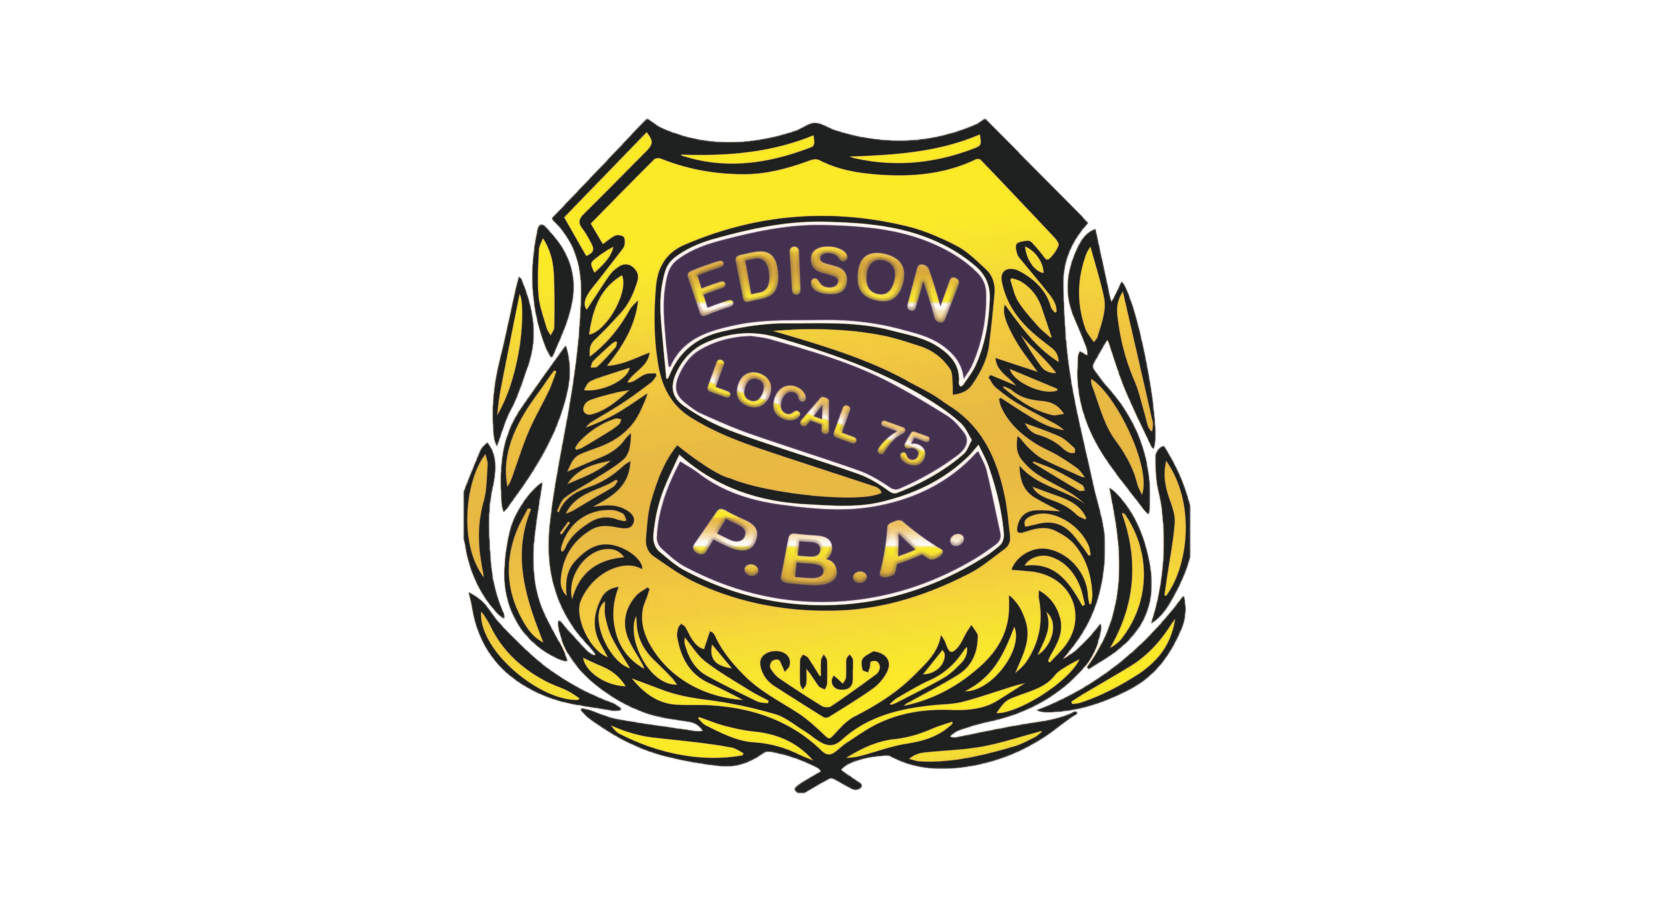 Edison PBA 75